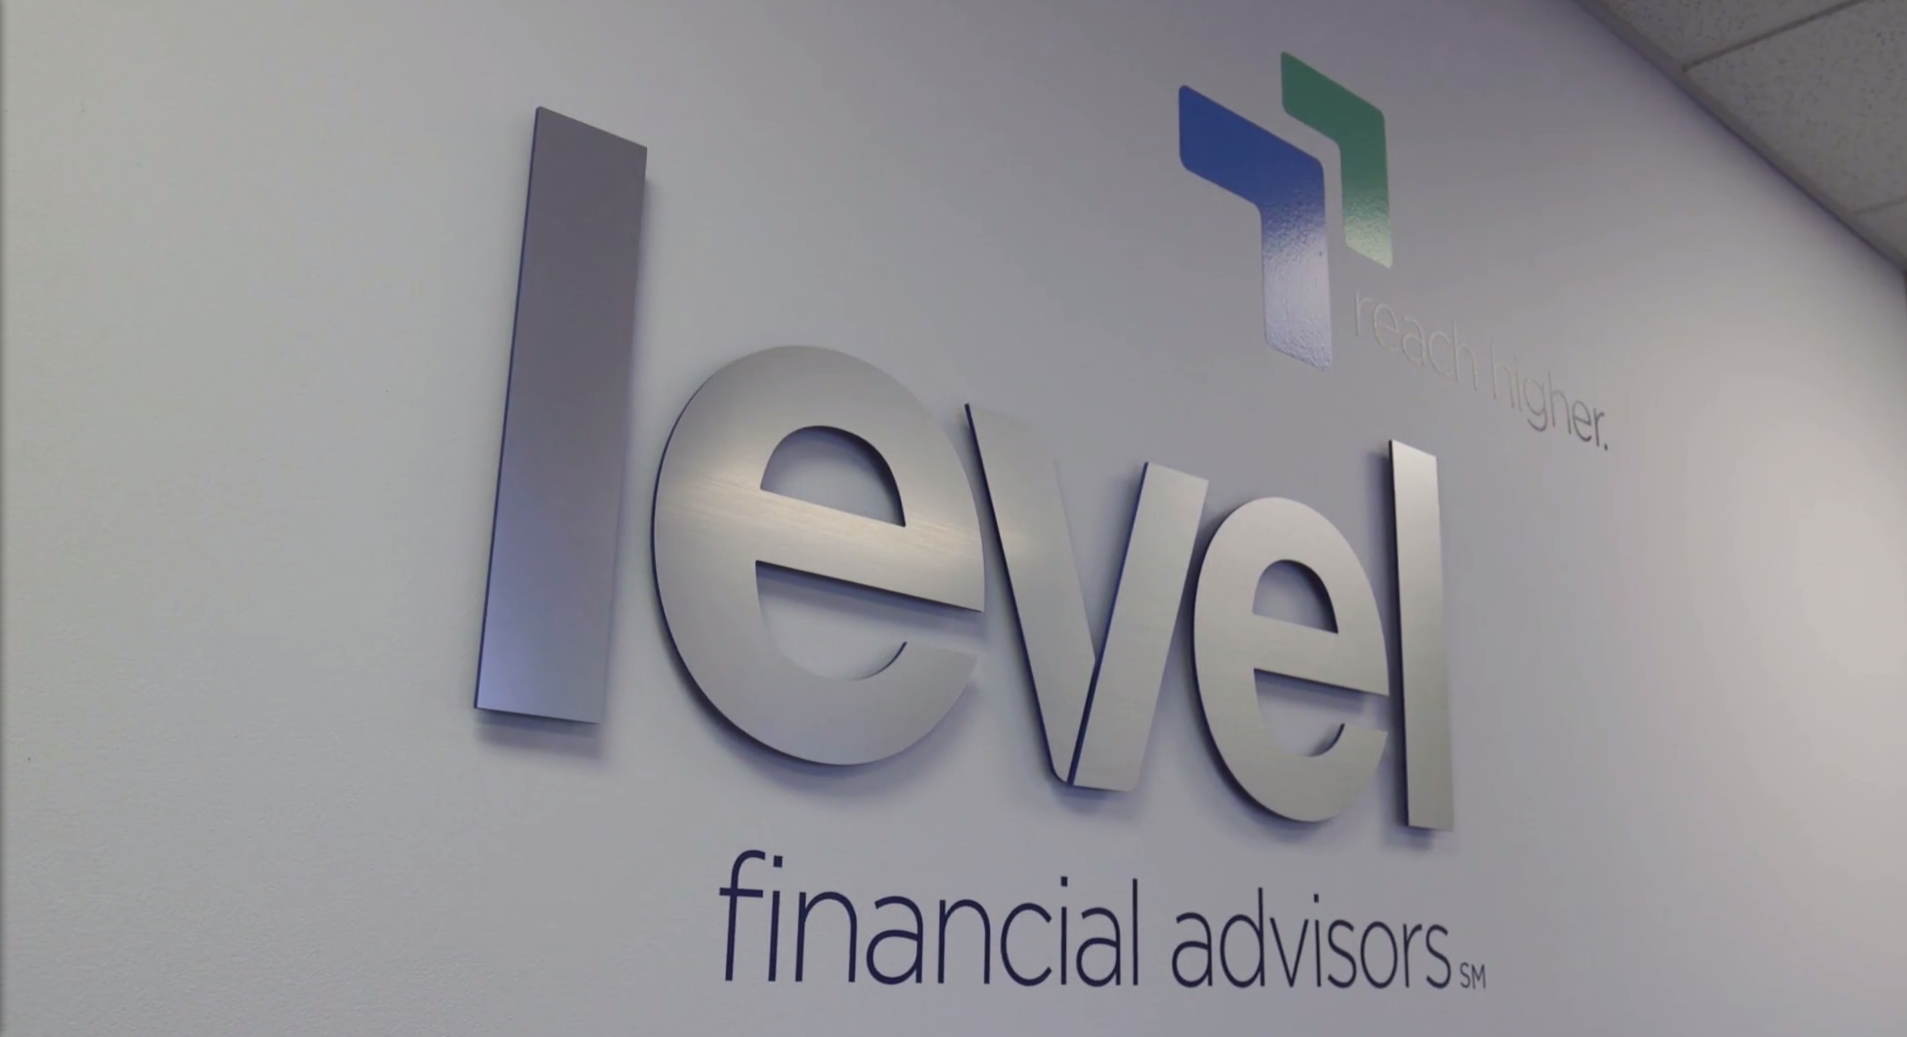 Level Financial Advisors logo